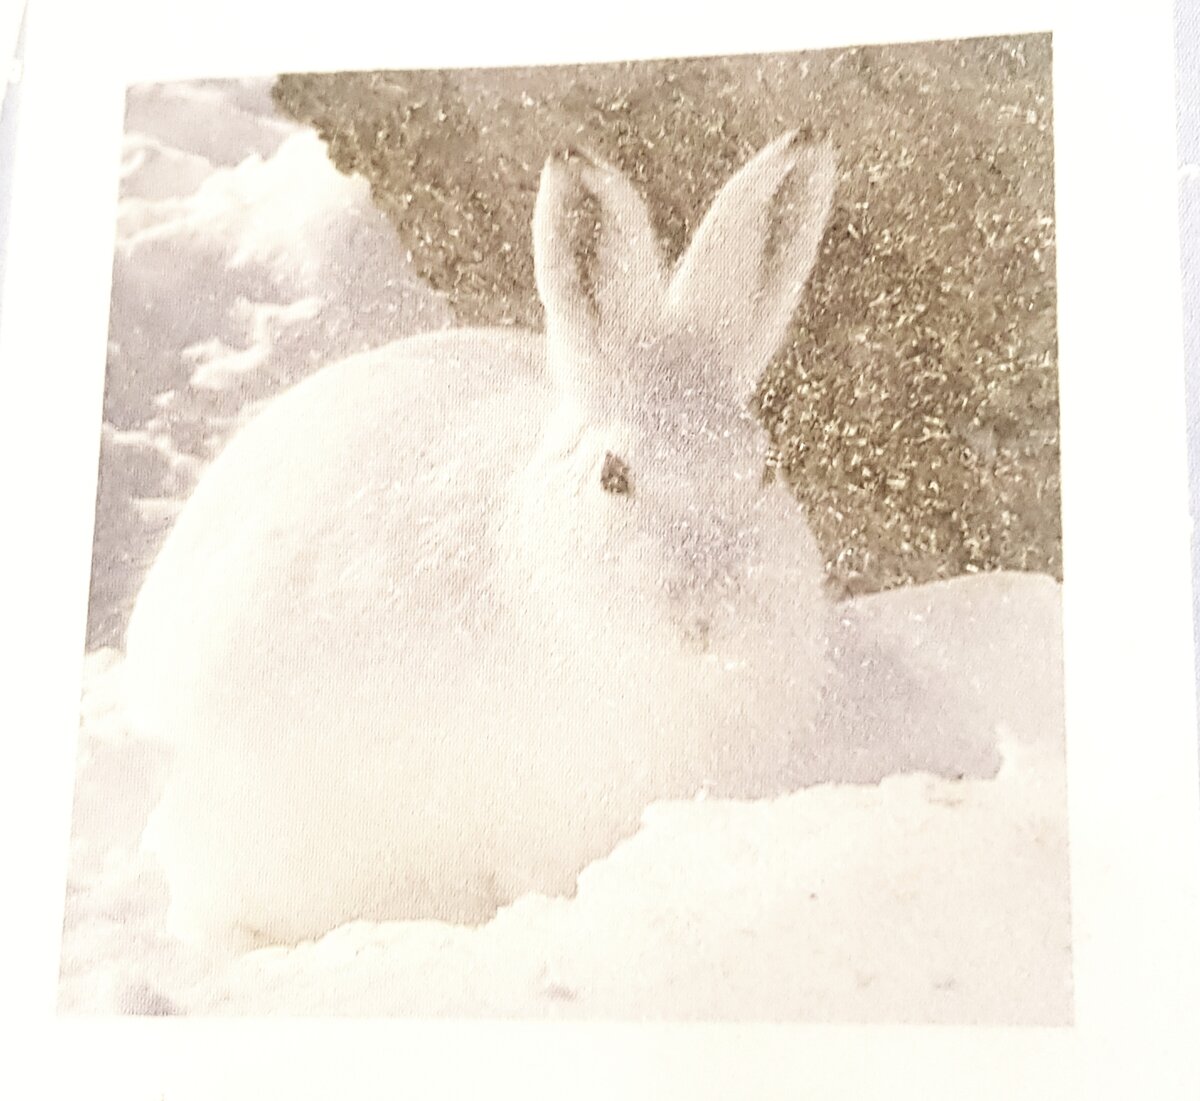 Заяц зимой рисунок для детей